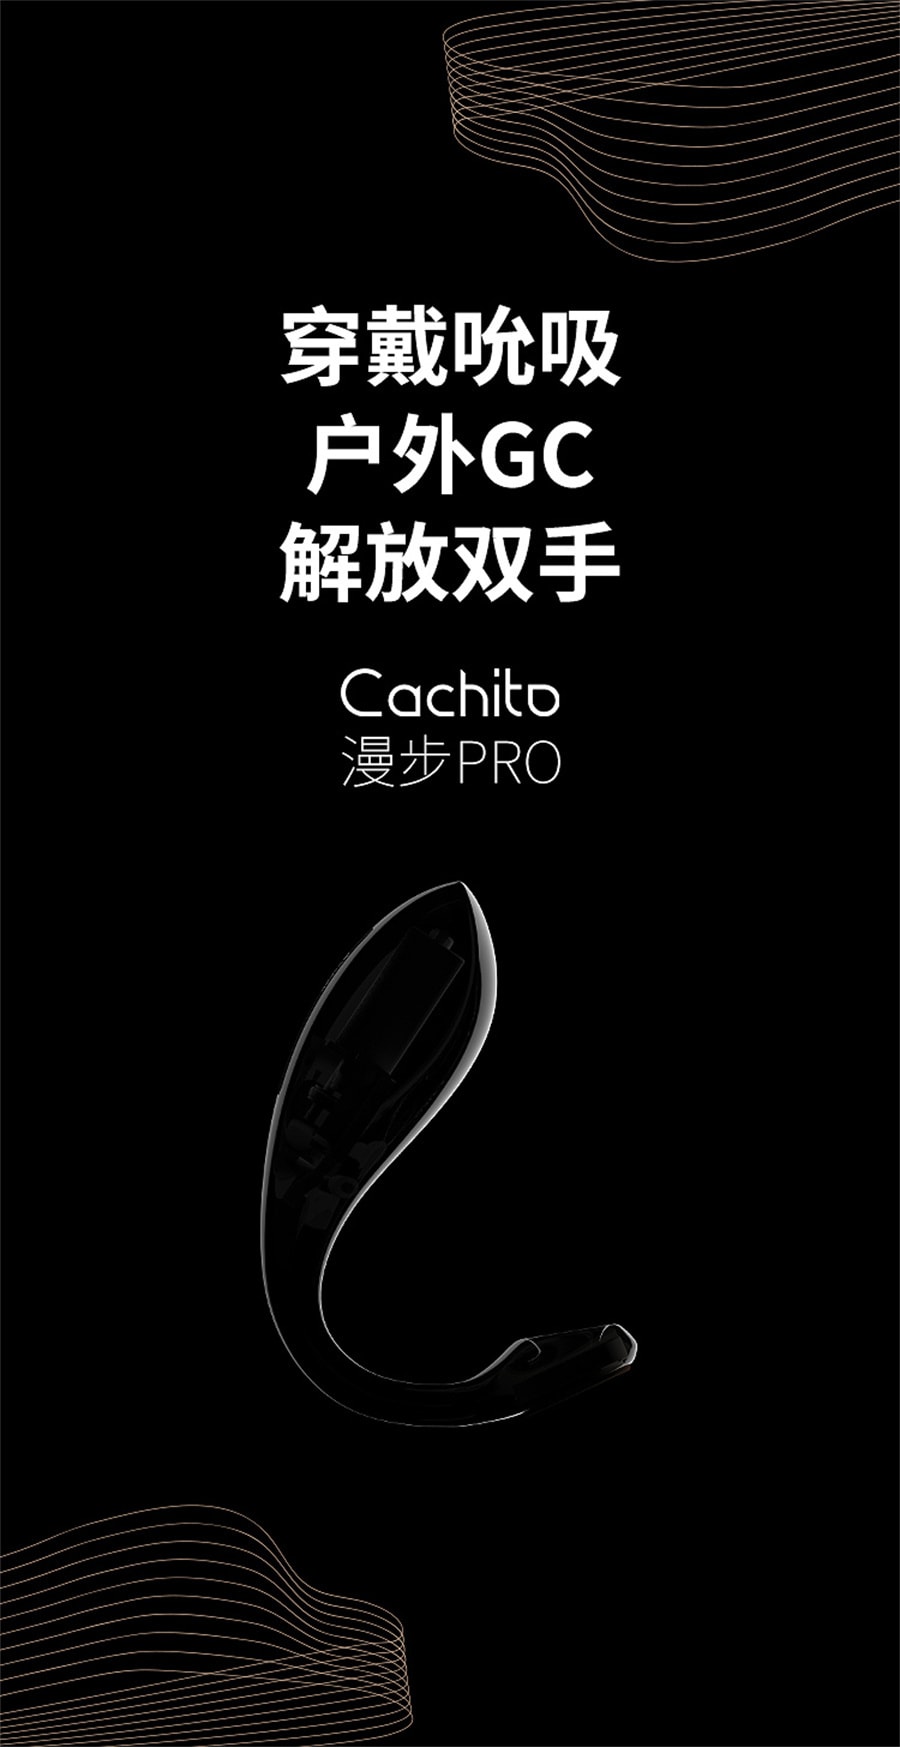 【中国直邮】Cachito 诱桃 漫步pro外出穿戴遥控女用自慰器高潮成人性玩具情趣